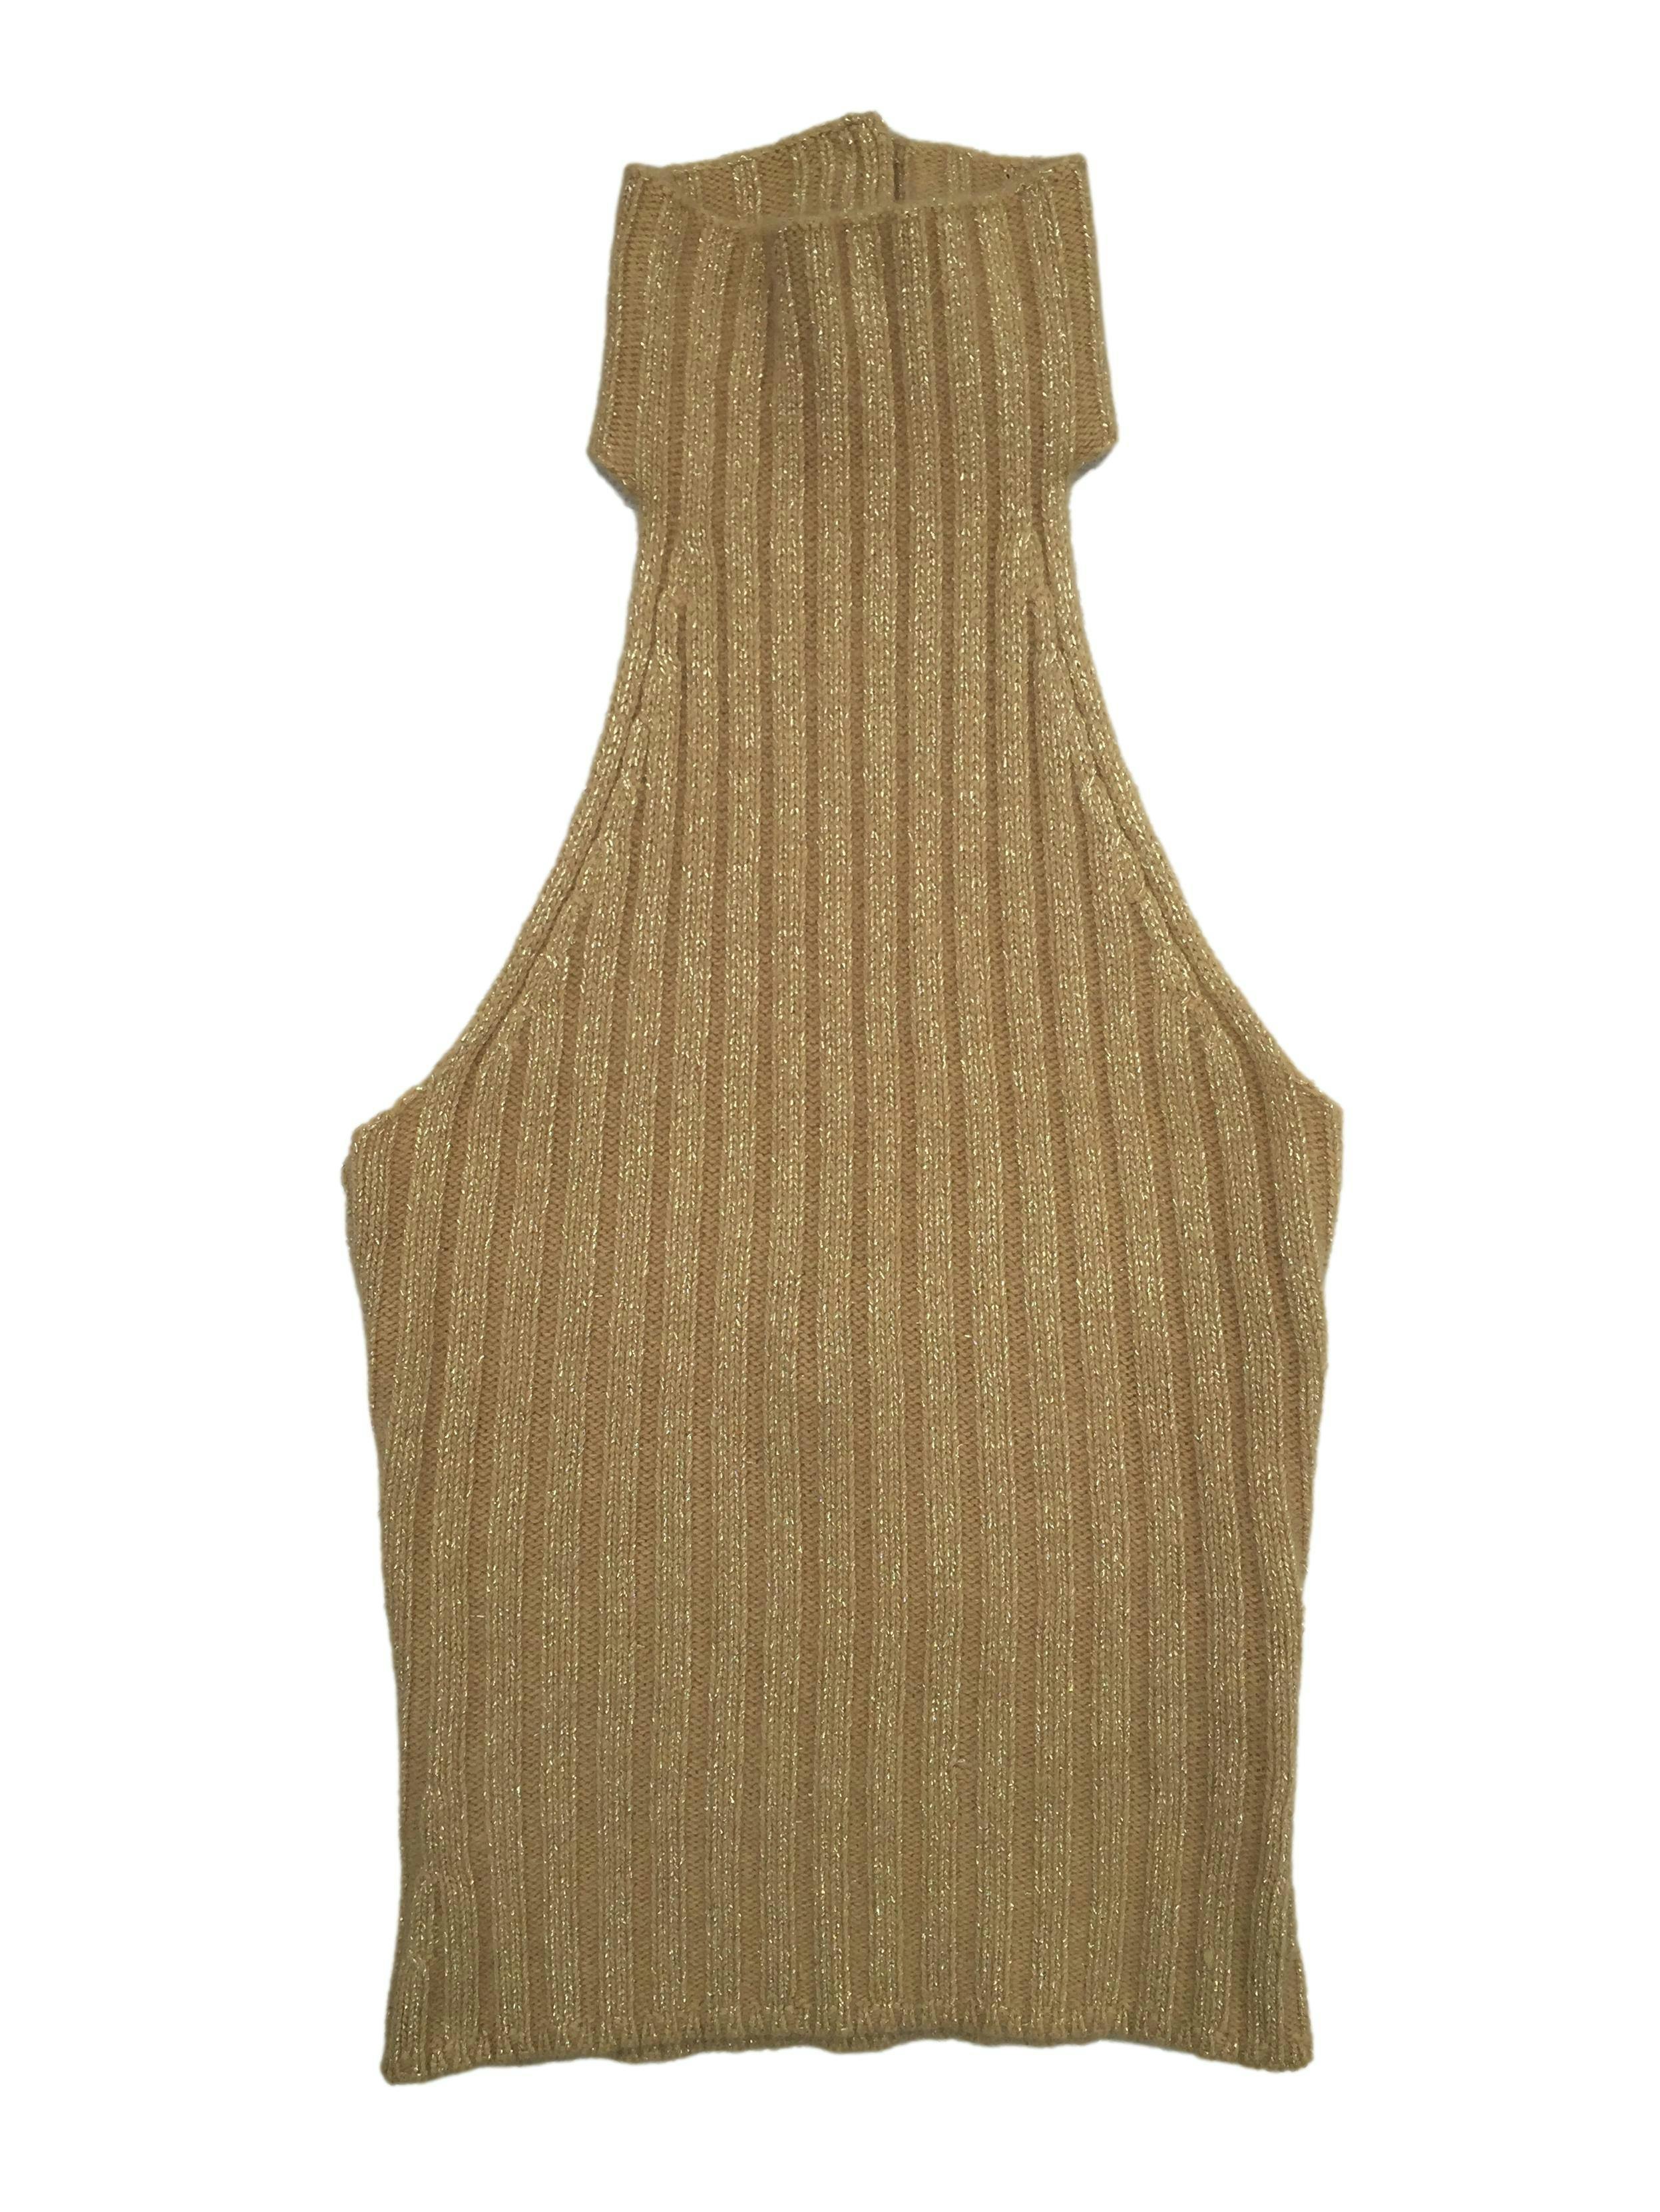 Top knit Express angora blend con hilos dorados, cuello halter y escote en espalda. Busto 70cm sin estirar, Largo 60cm.